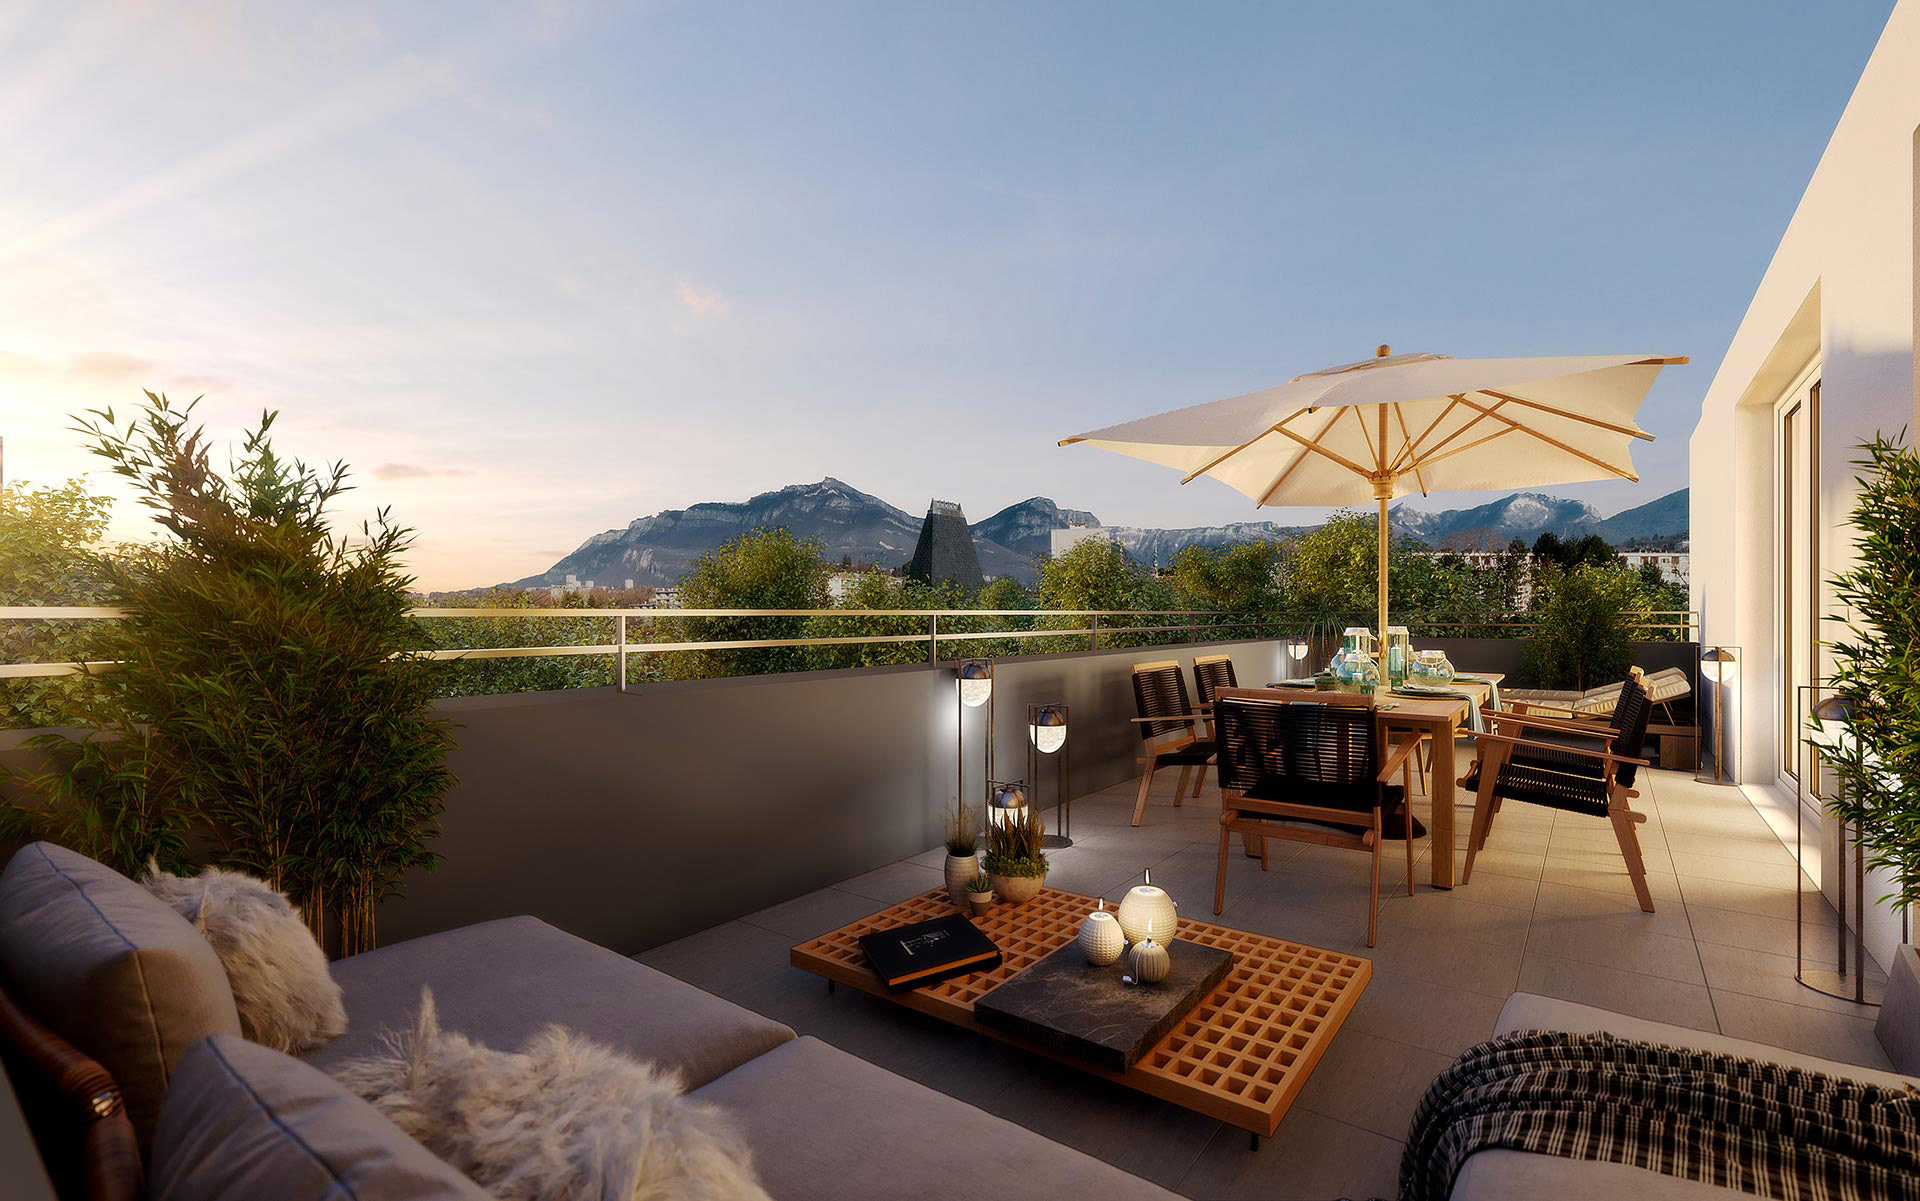 Création d'une image de terrasse en 3D pour la promotion immobilière du bien